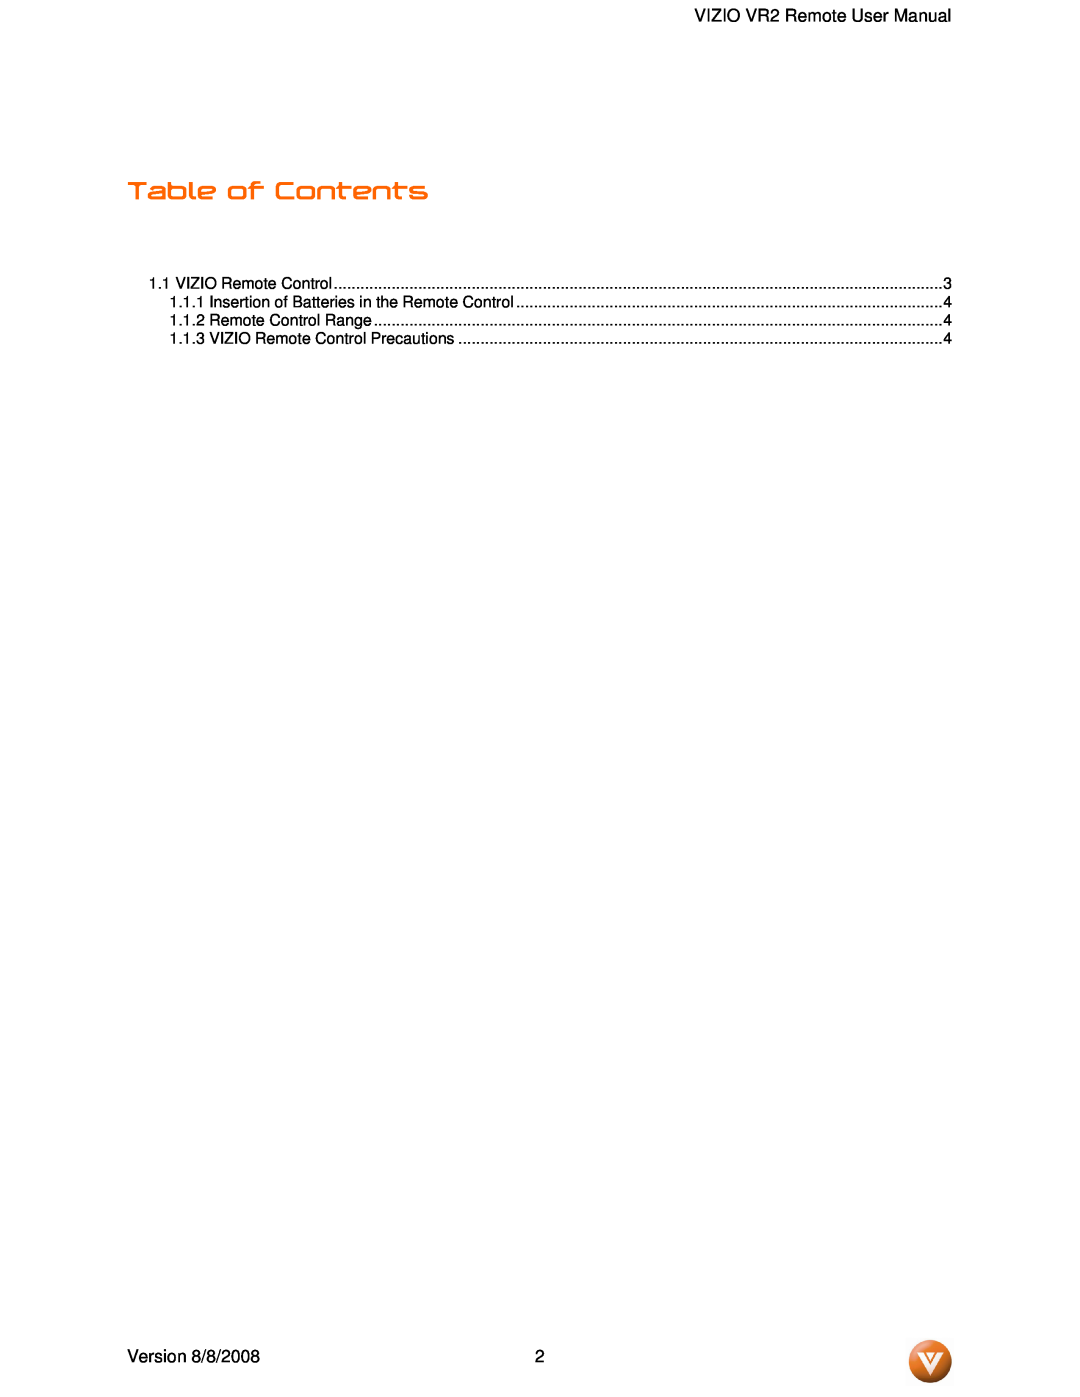 Vizio VR2 manual Table of Contents, Version 8/8/2008, VIZIO Remote Control, Remote Control Range 